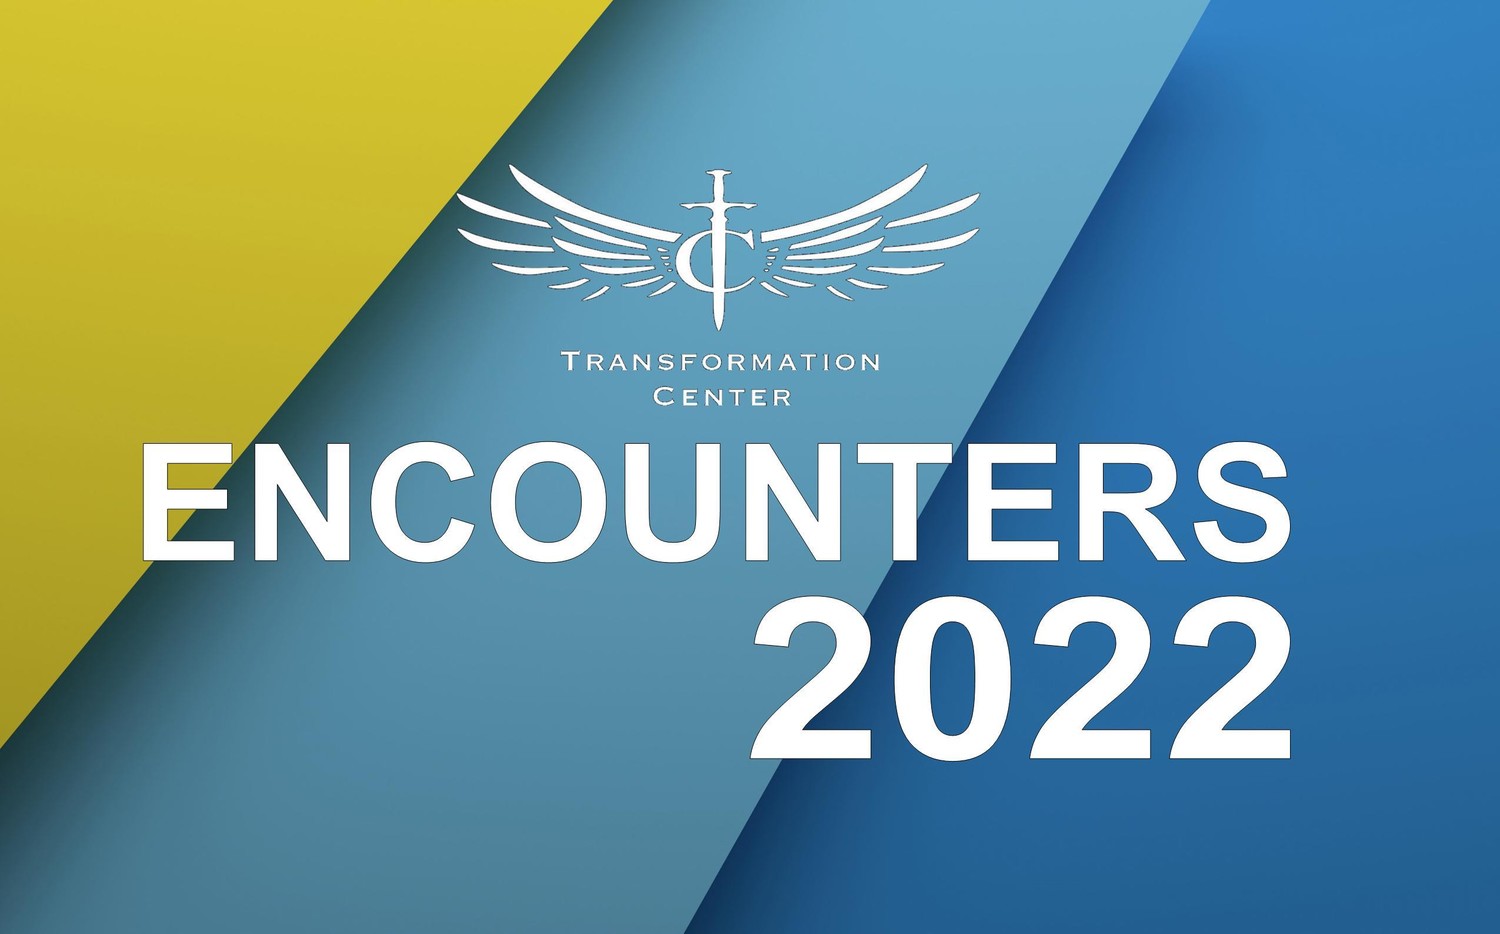 График Инкаунтеров TCCI на 2022 год / Transformation Center Encounters 2022